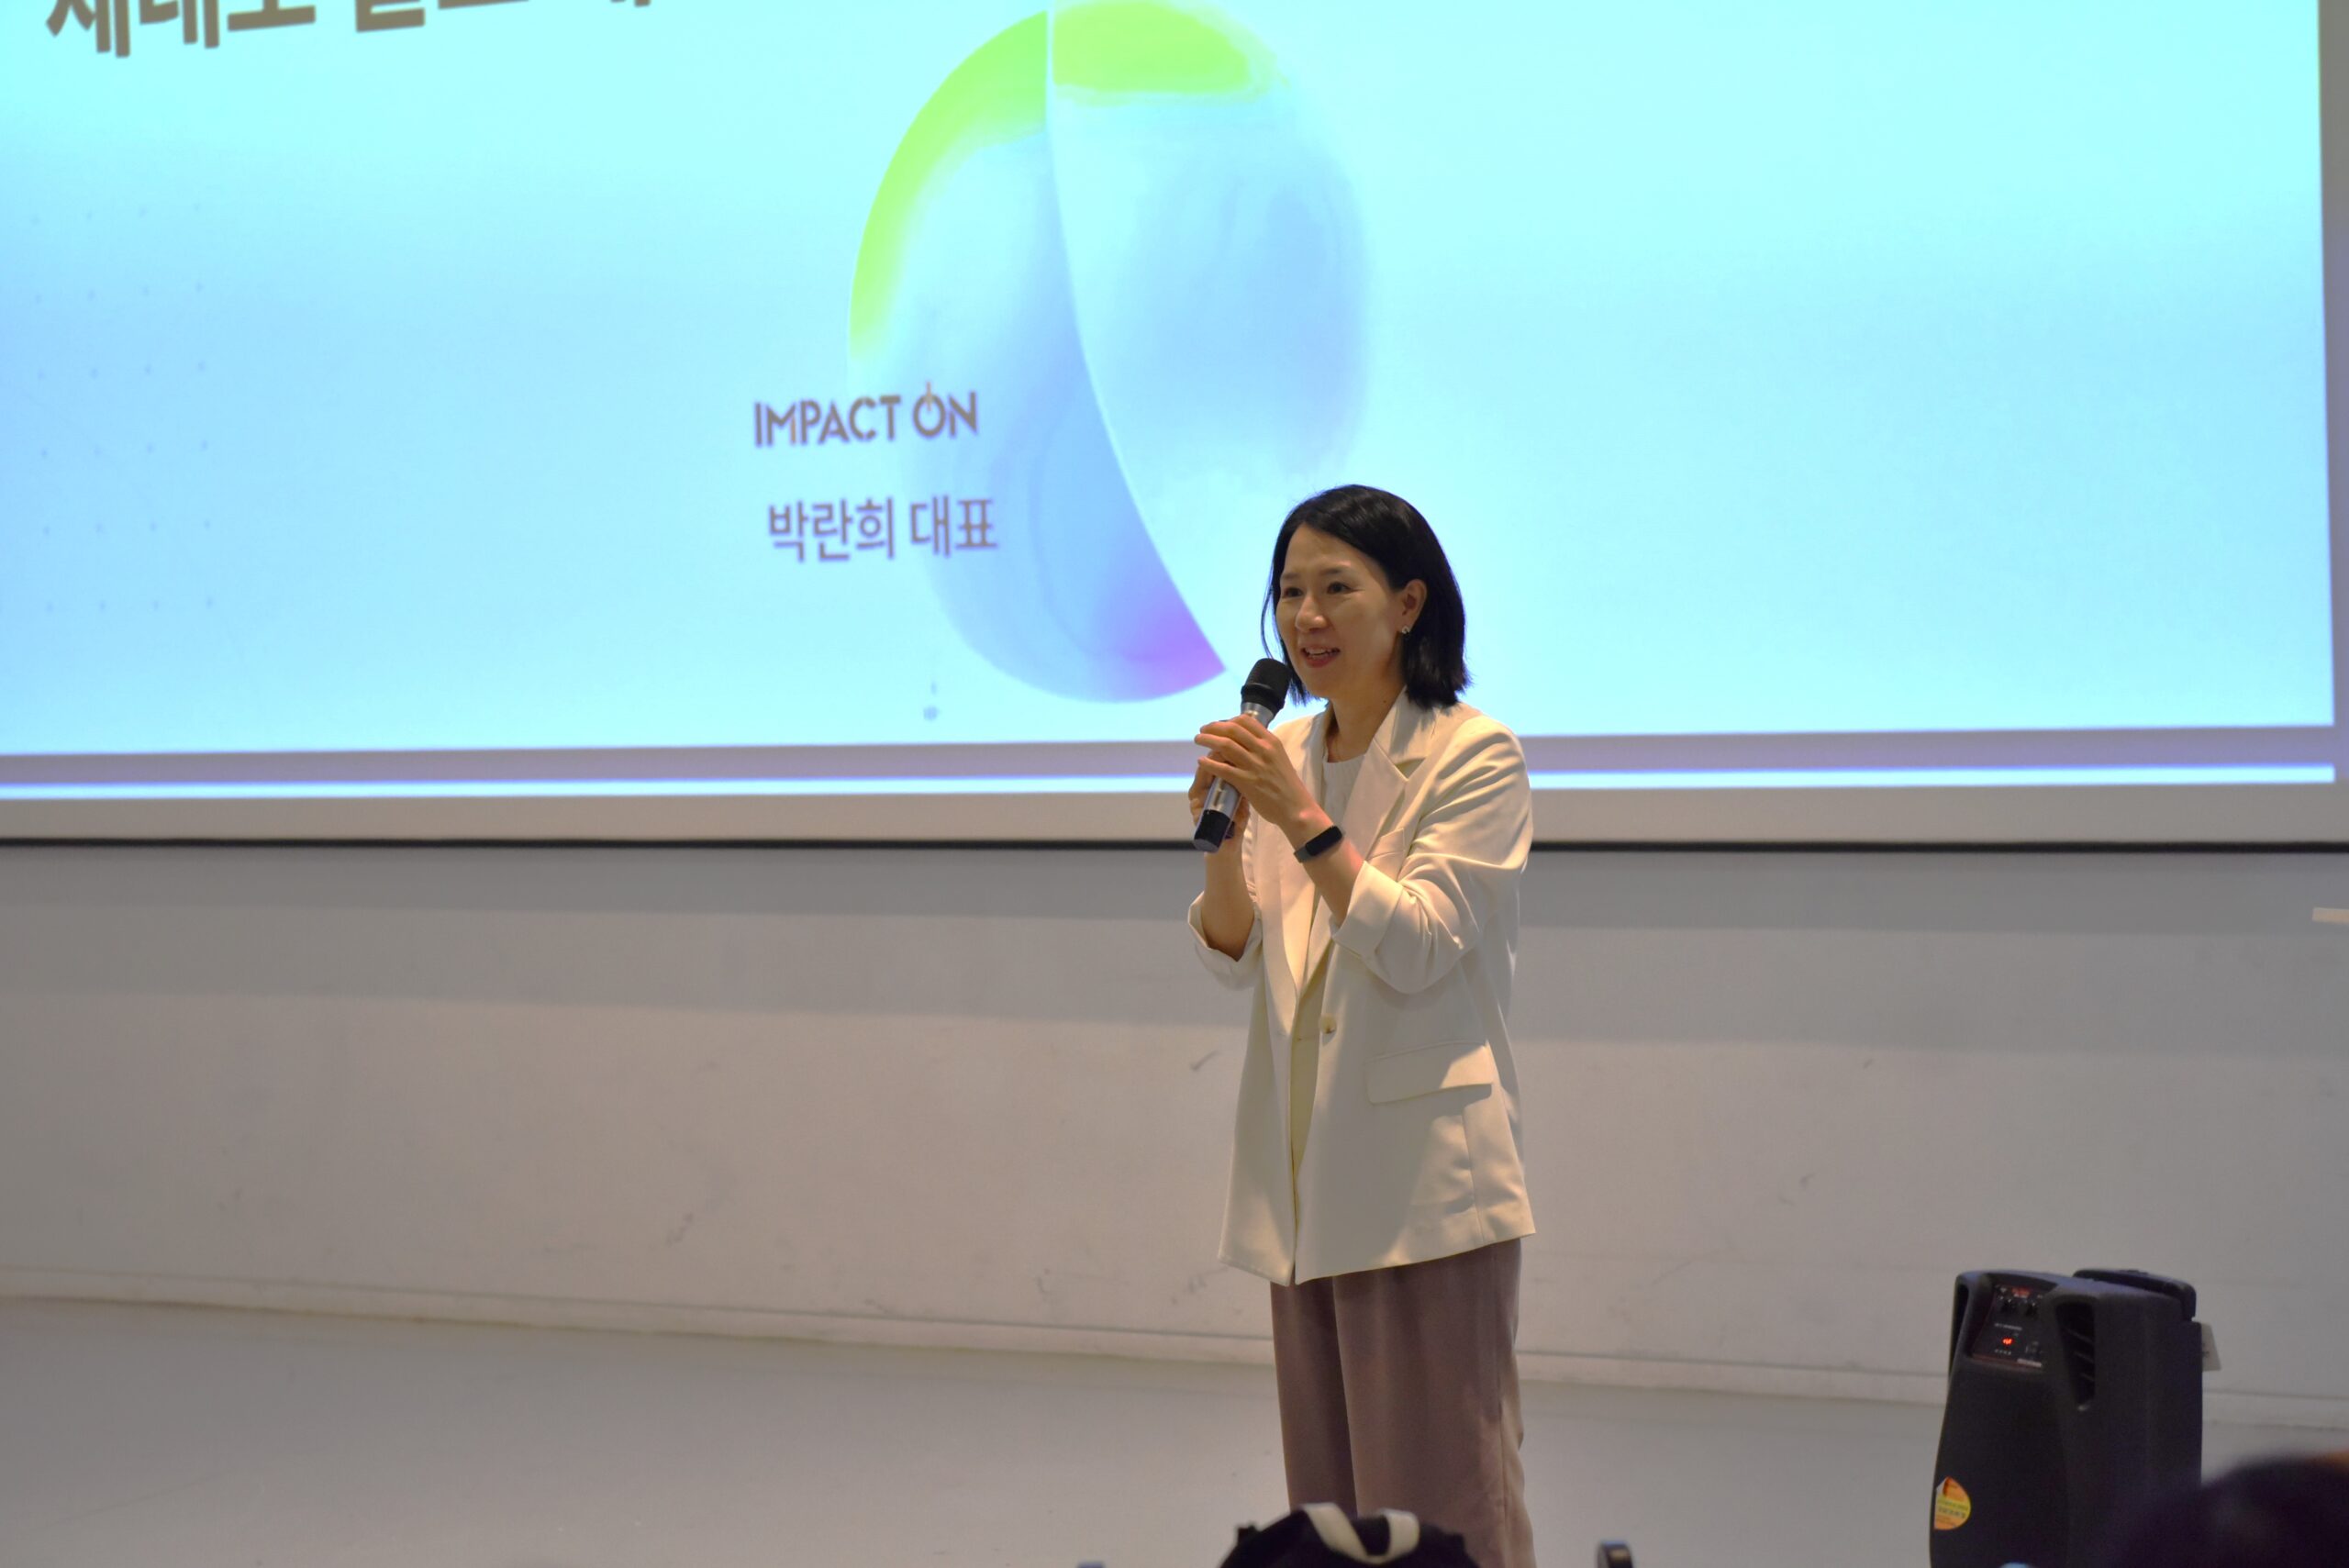 2030 기후클럽 발대식에서 연사 중인 임팩트온 박란희 대표. /2030 기후클럽